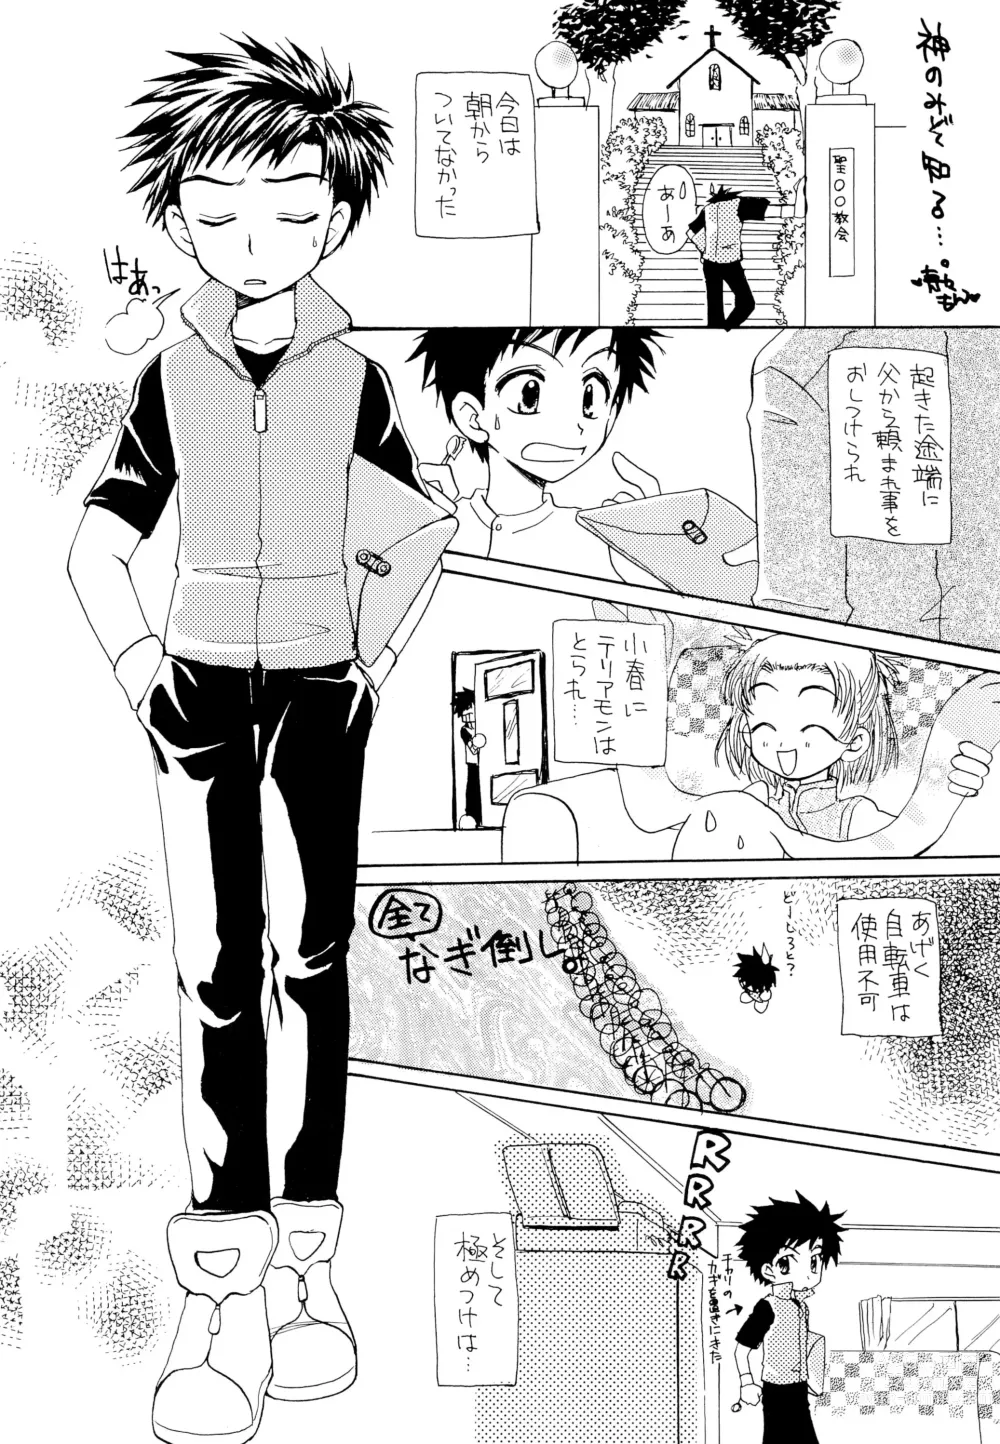 Page 6 of doujinshi LiTaka 2